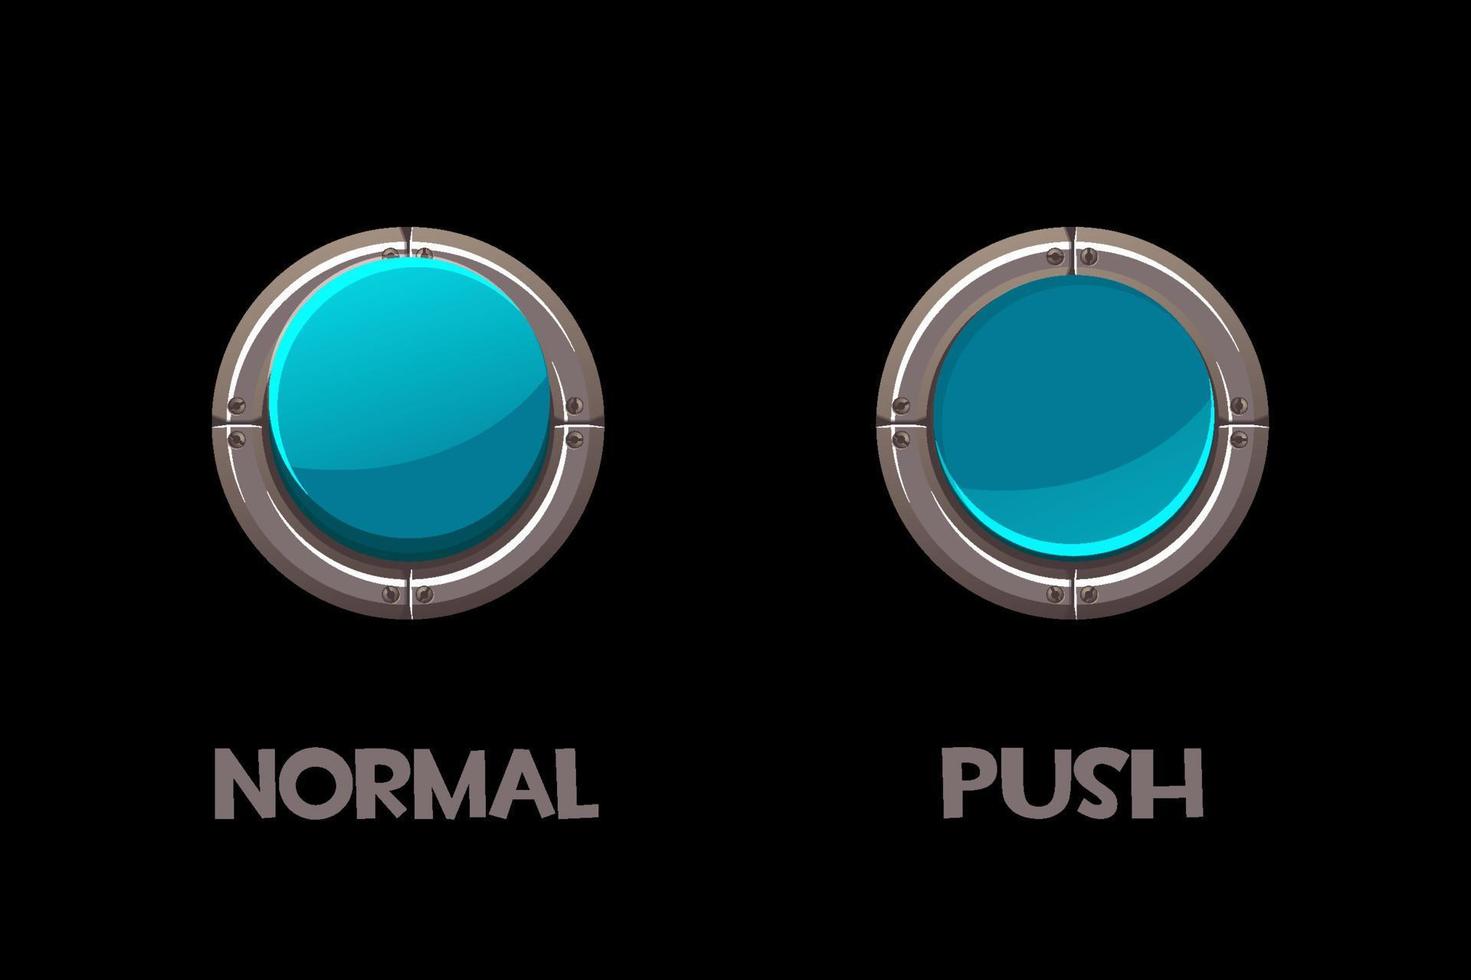 vetor isolado botões metálicos redondos empurrar e normal. botões azuis para interface de usuário do jogo.